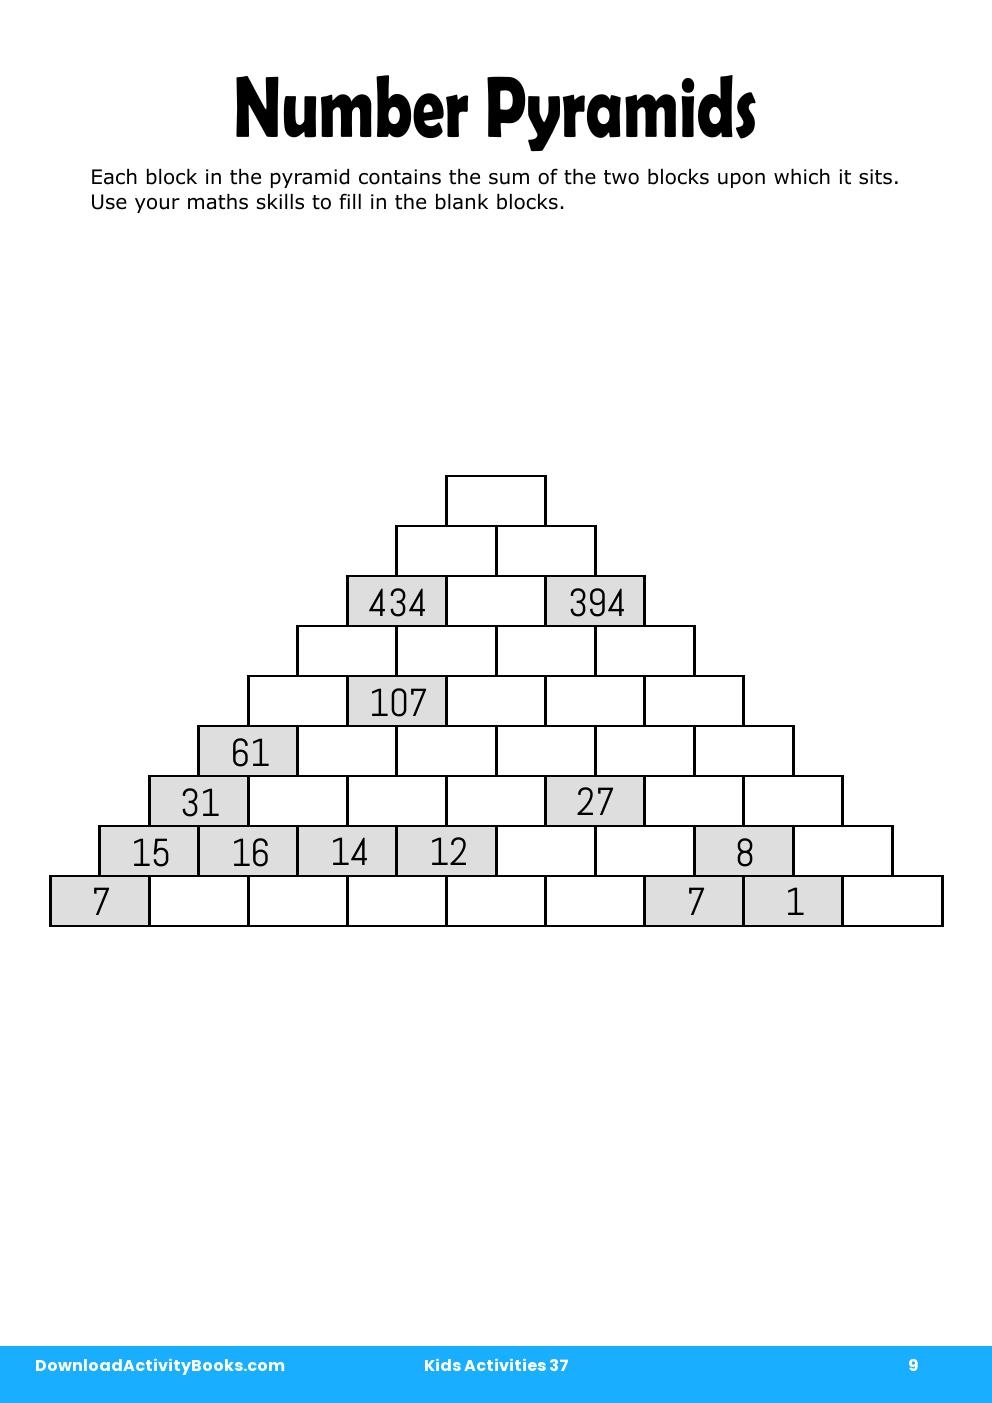 Number Pyramids in Kids Activities 37